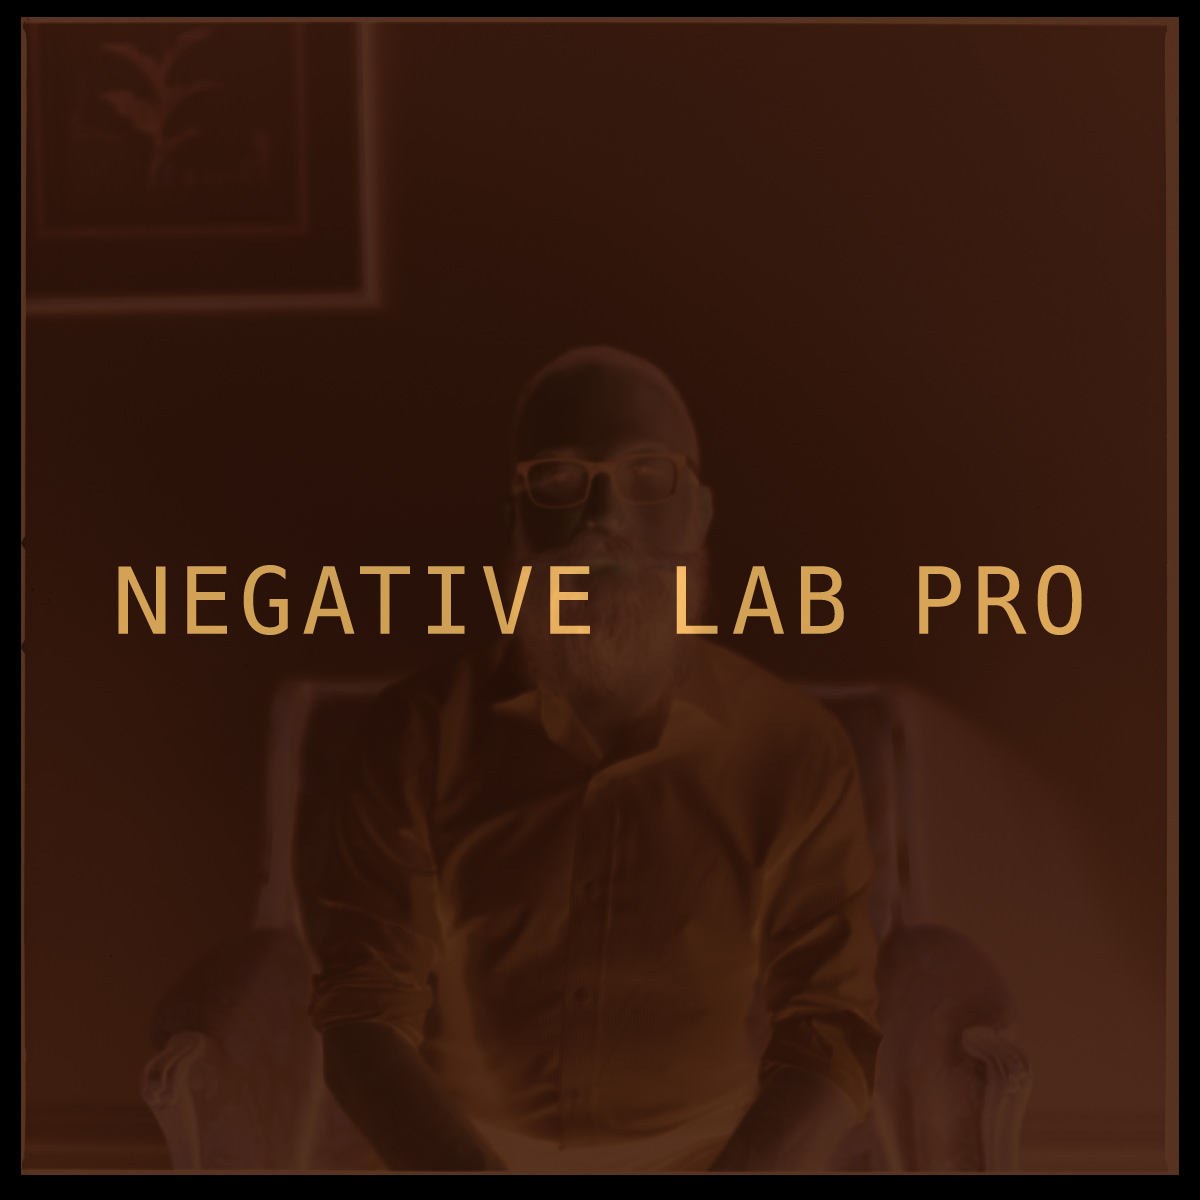 www.negativelabpro.com